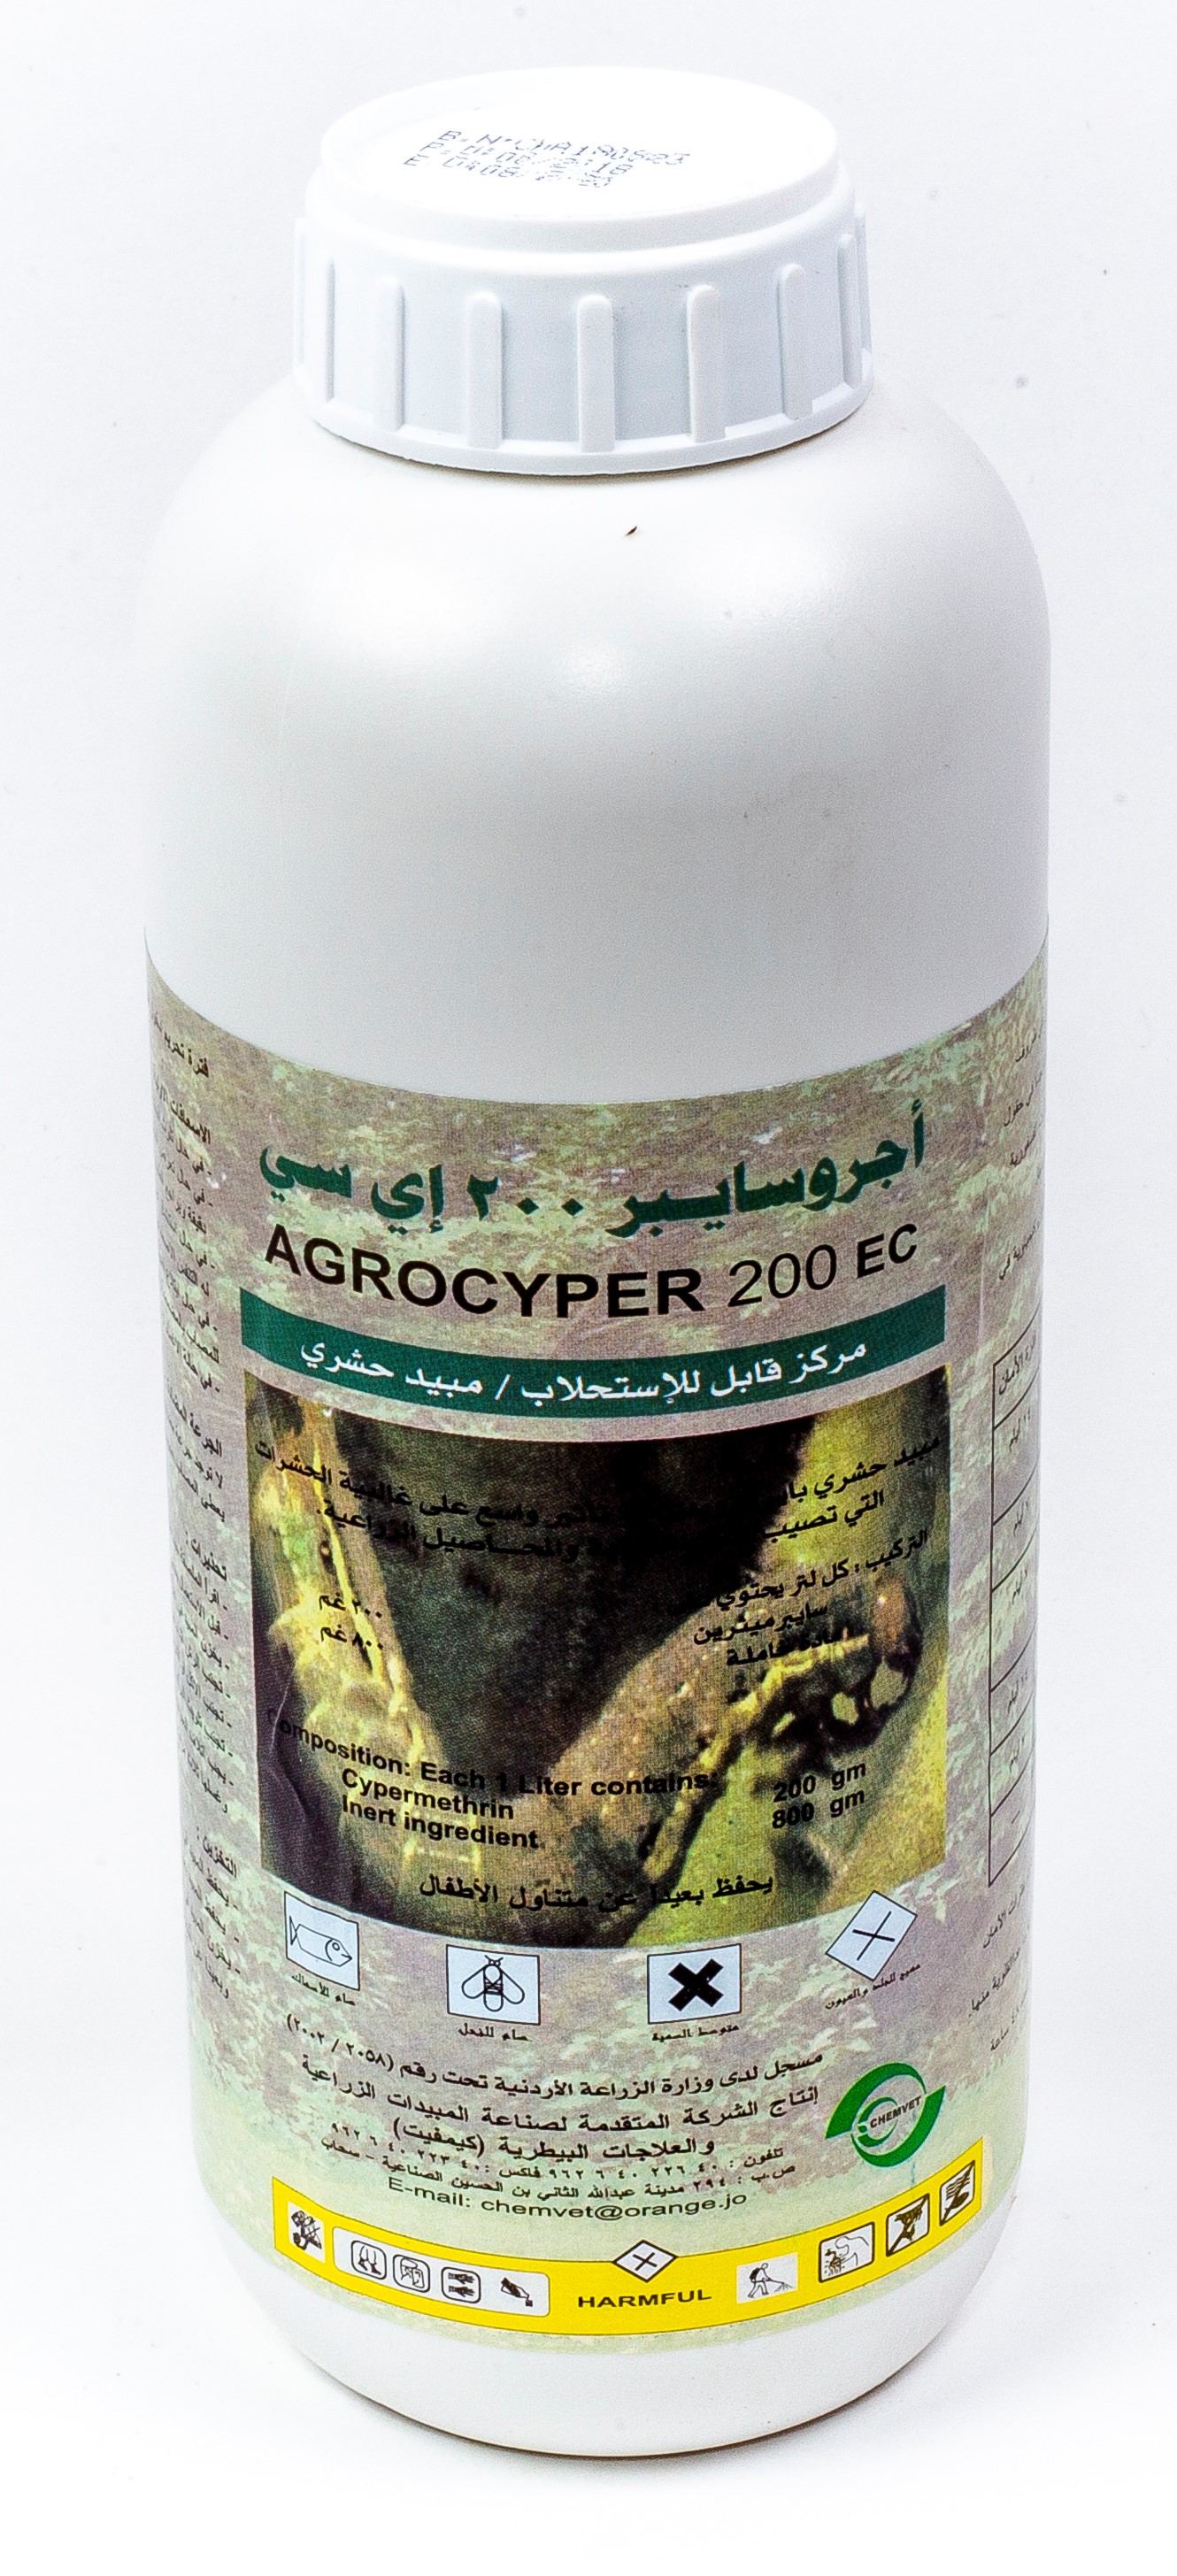 Agrocyper 20 EC